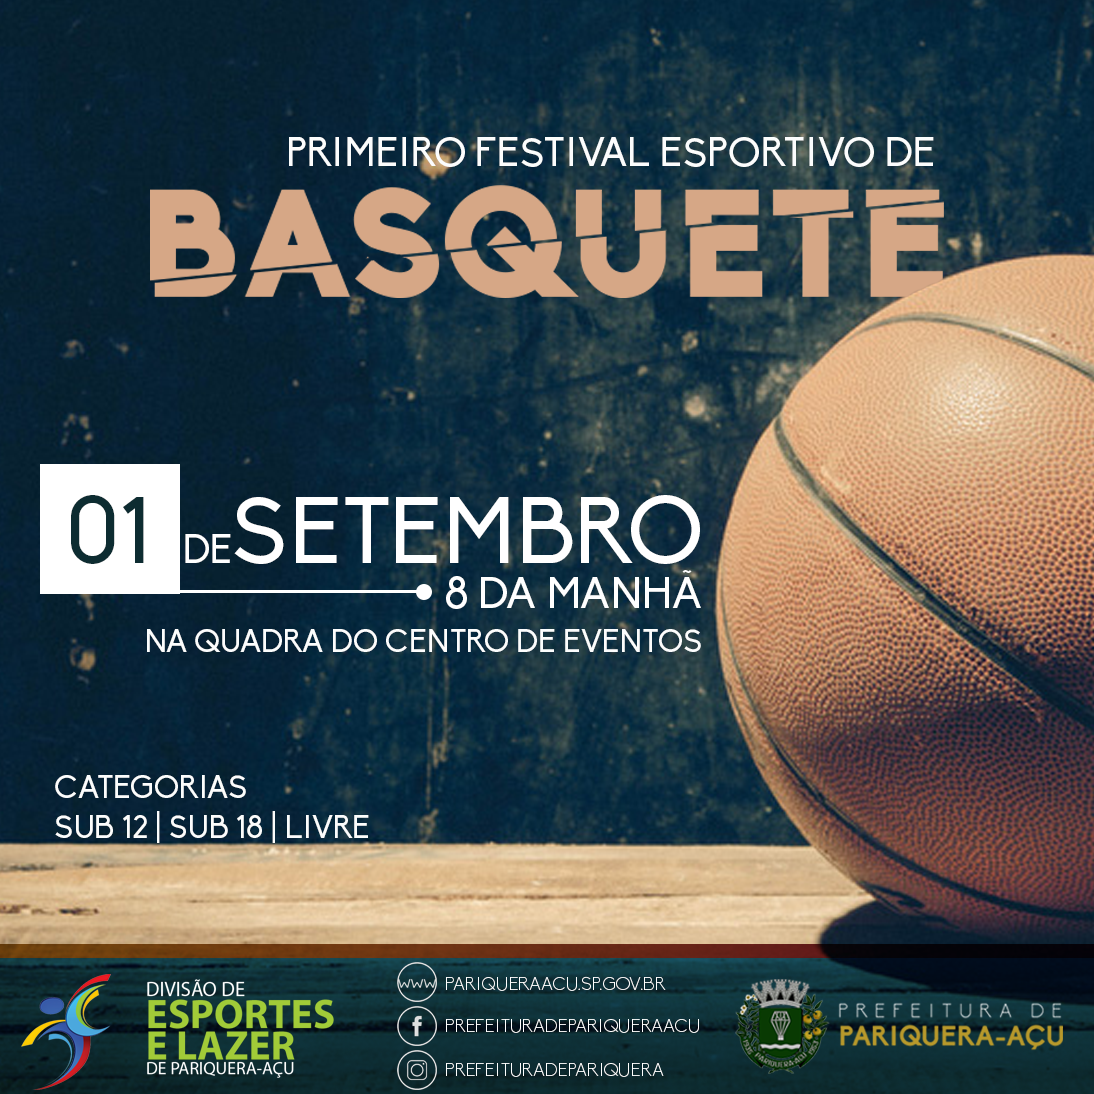 Basquete - Esportividade - Guia de esporte de São Paulo e região